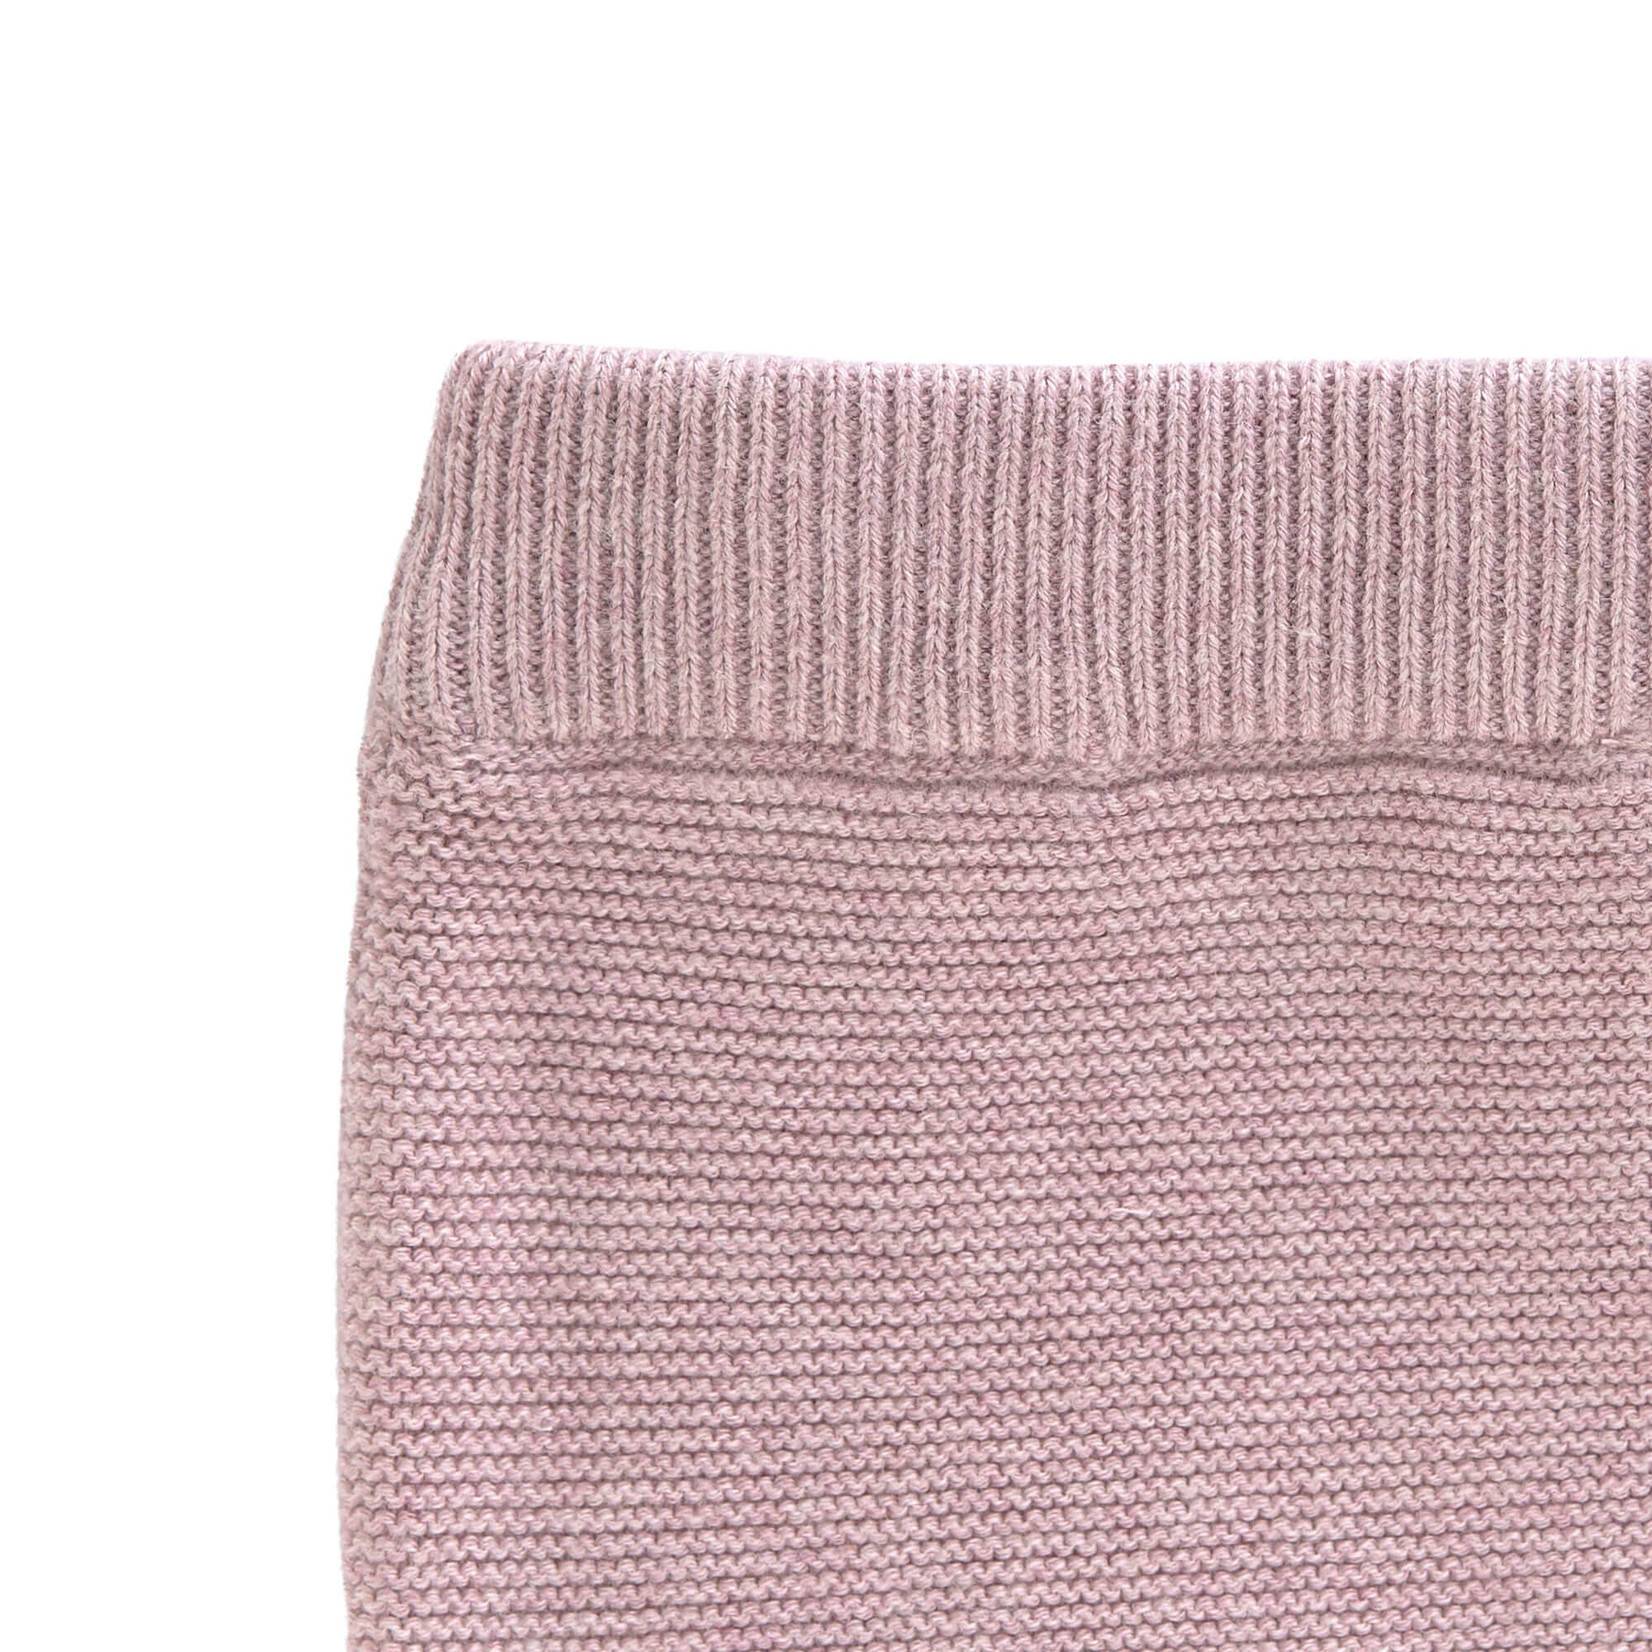 Lässig Knitted Pants Gots  Garden Explorer  Light Pink